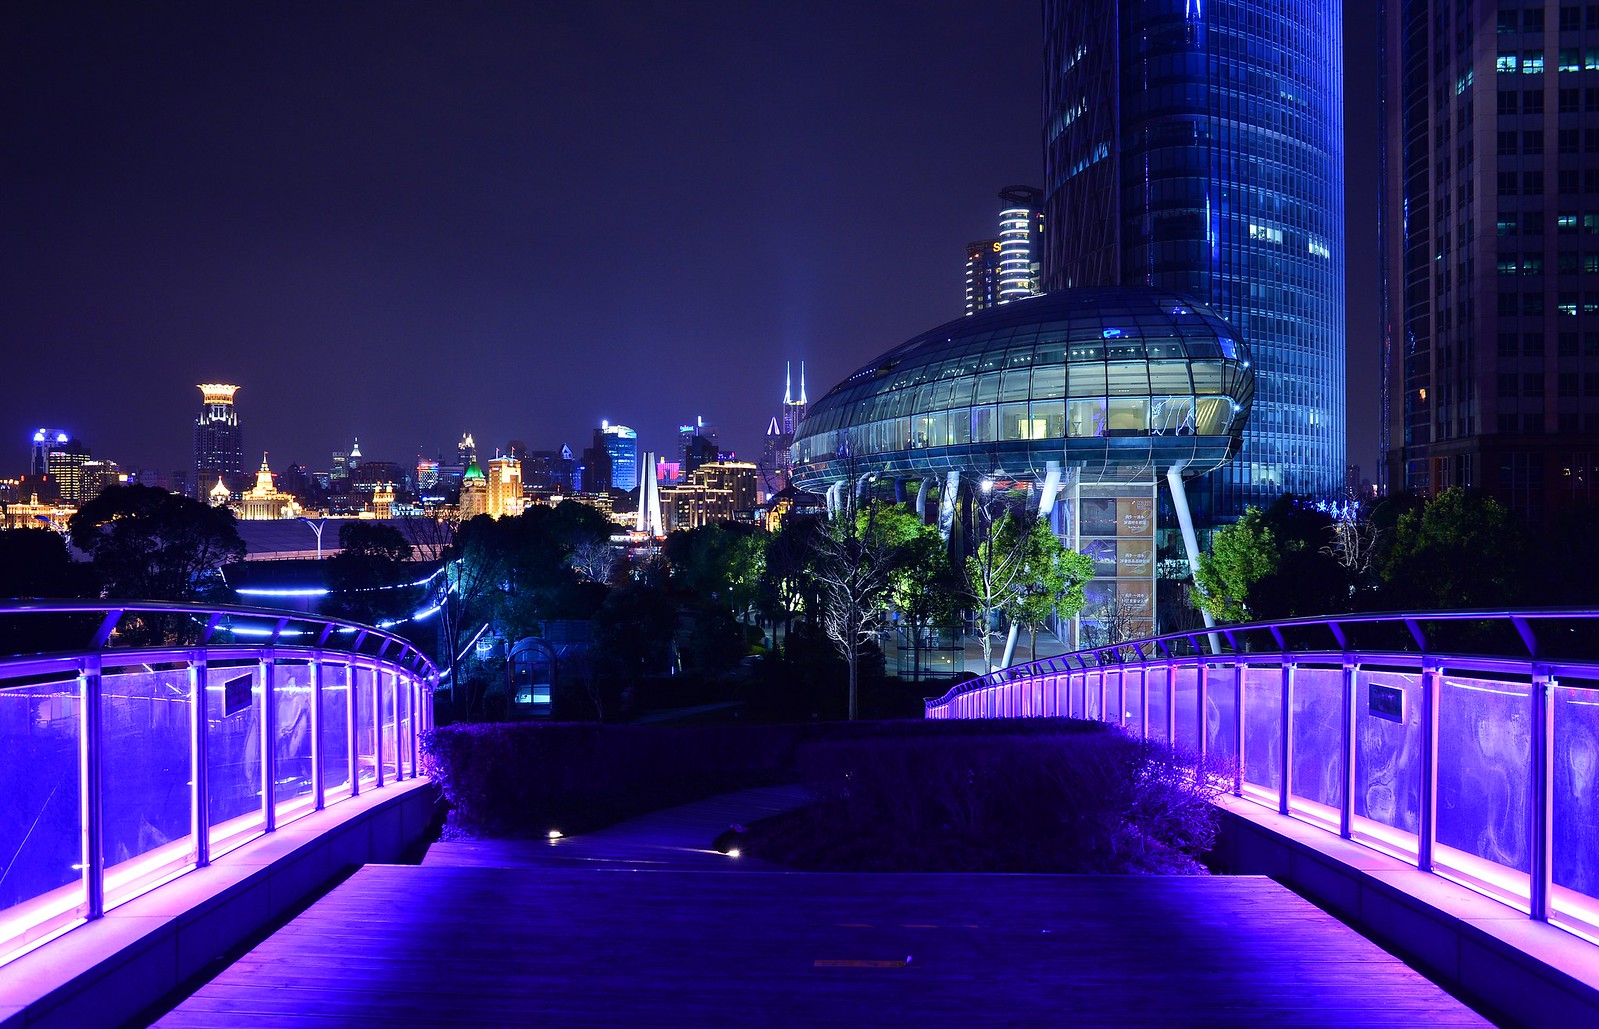 Shanghai - Night View